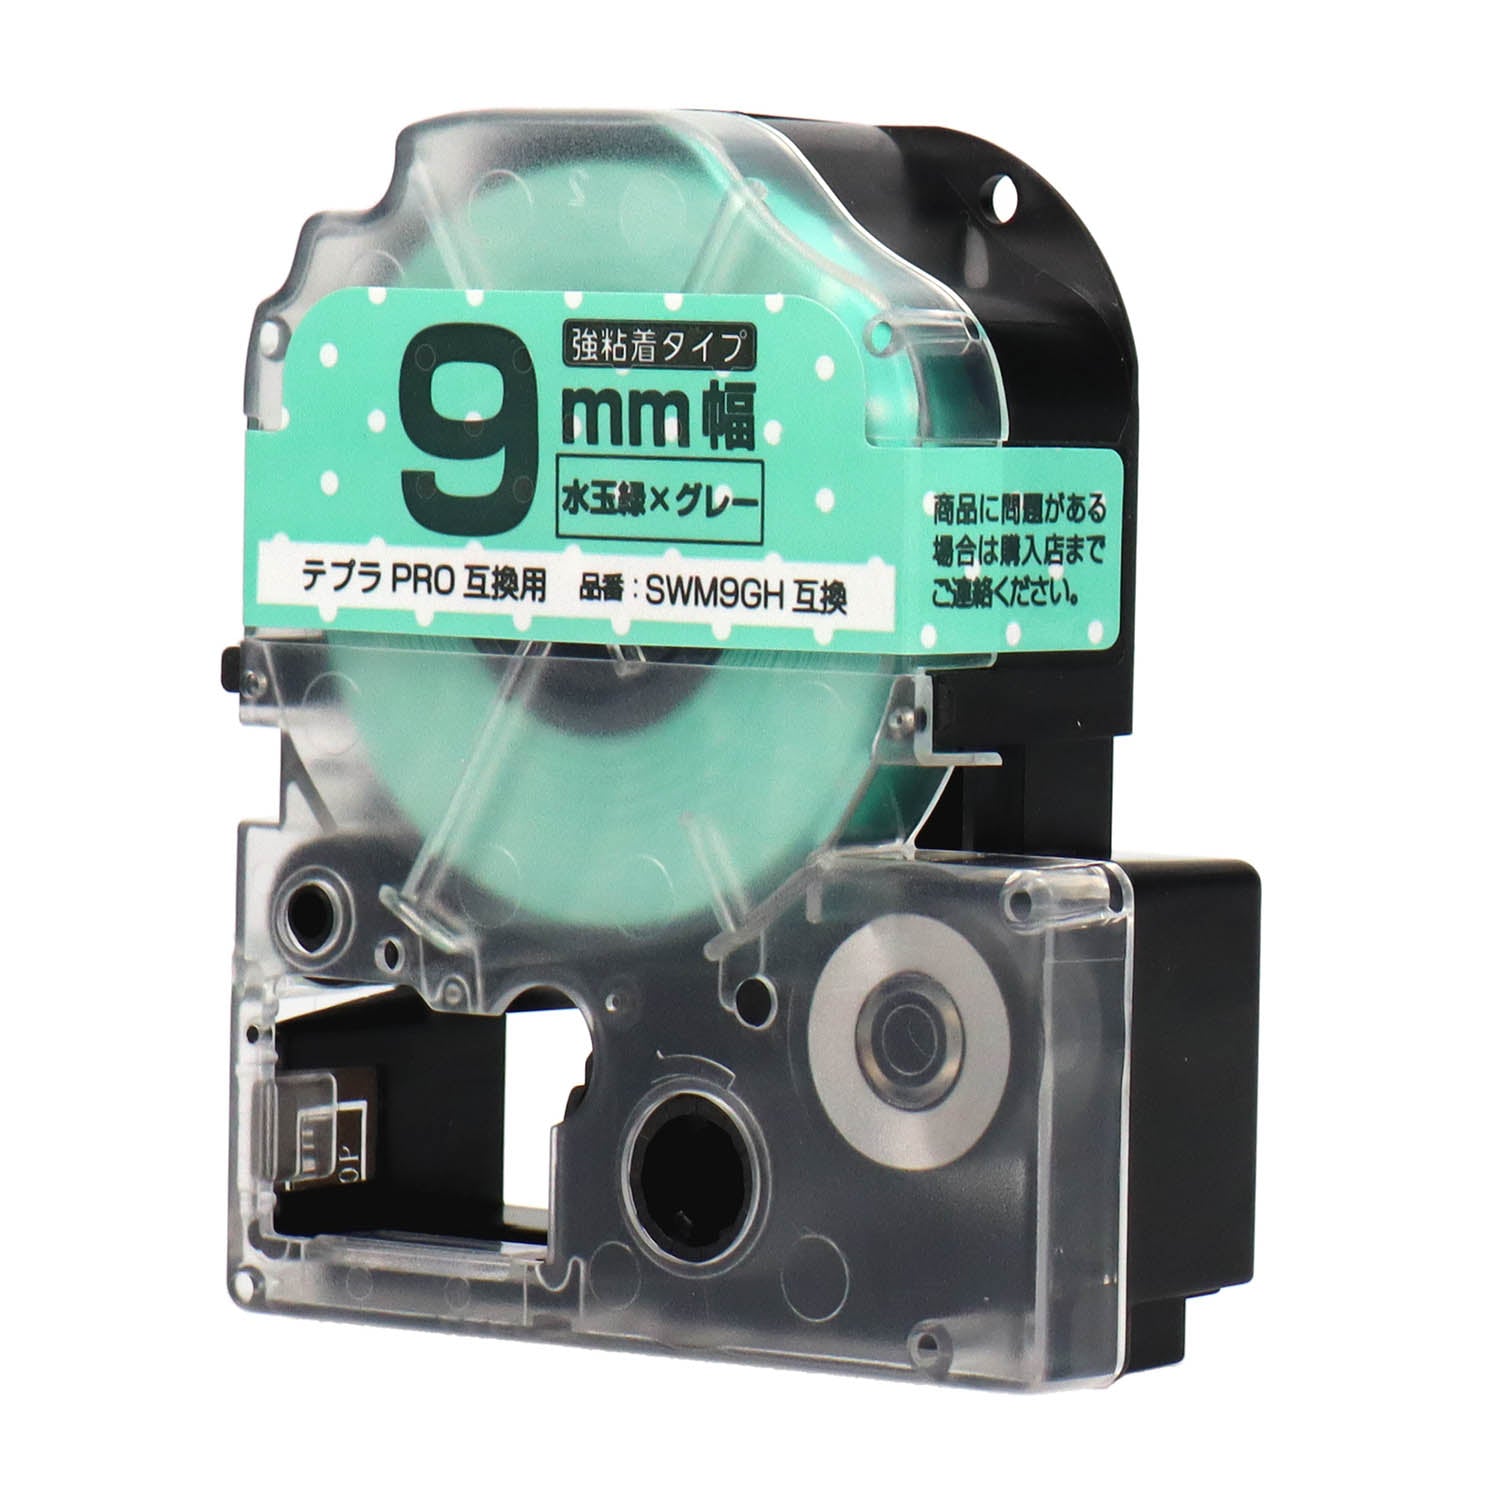 テプラPRO用互換テープカートリッジ 水玉緑×グレー文字 9mm